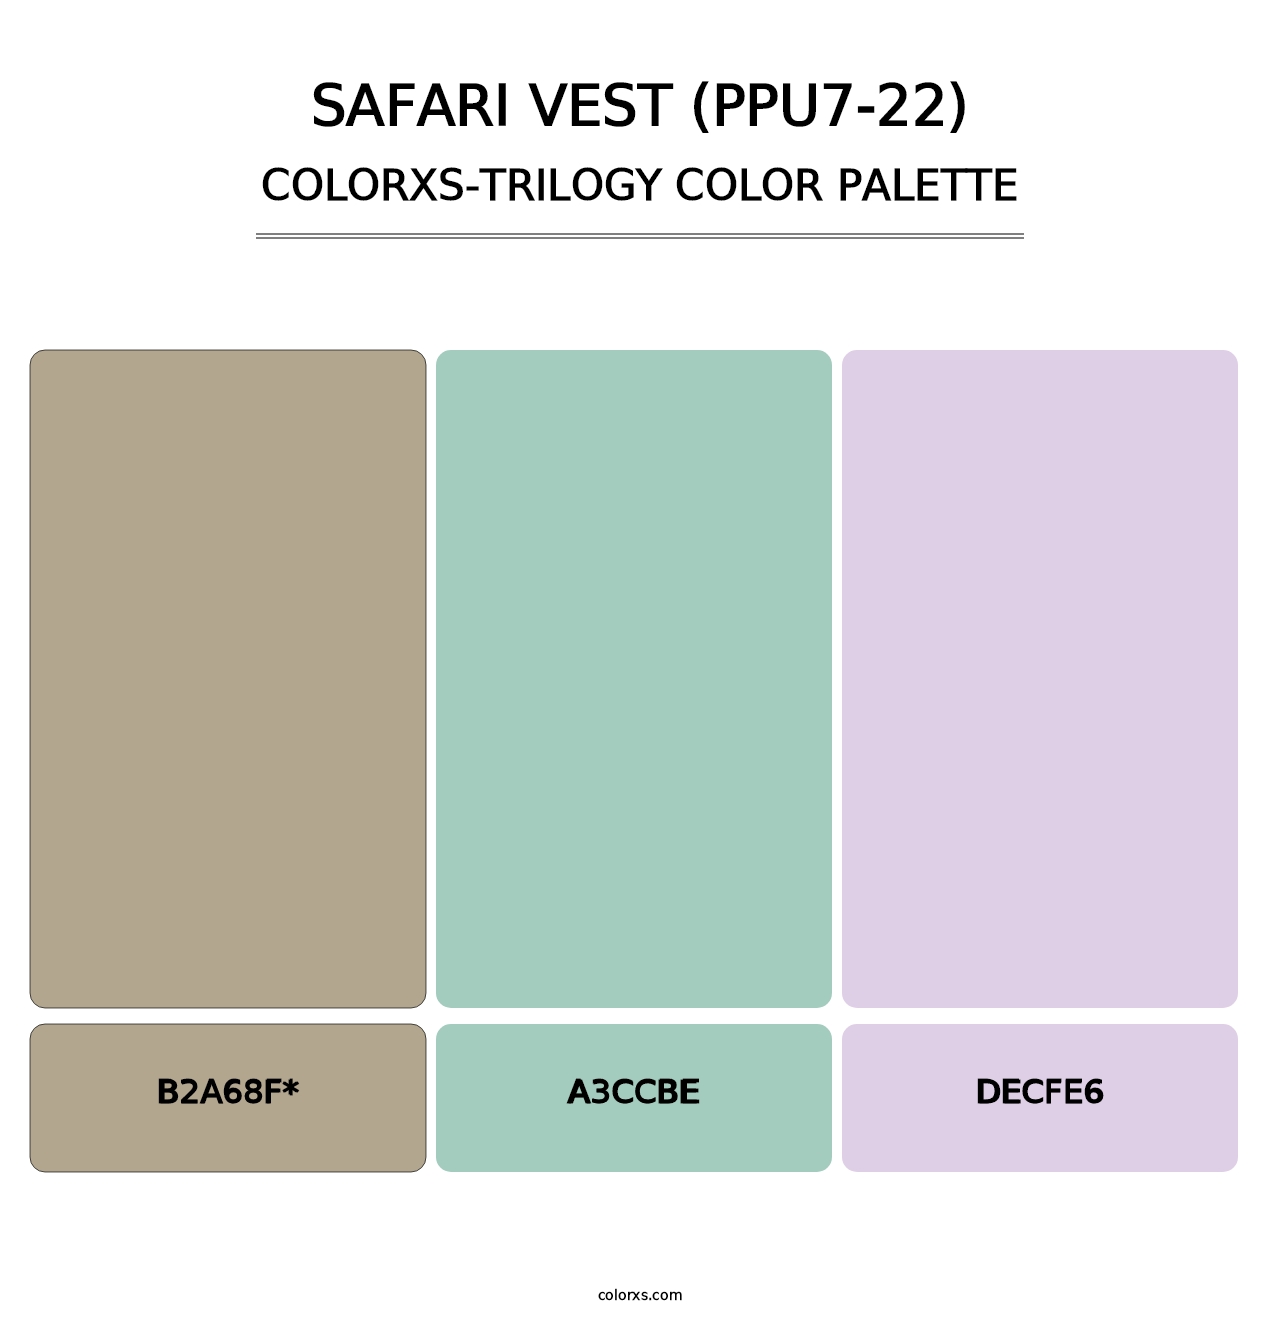 Safari Vest (PPU7-22) - Colorxs Trilogy Palette